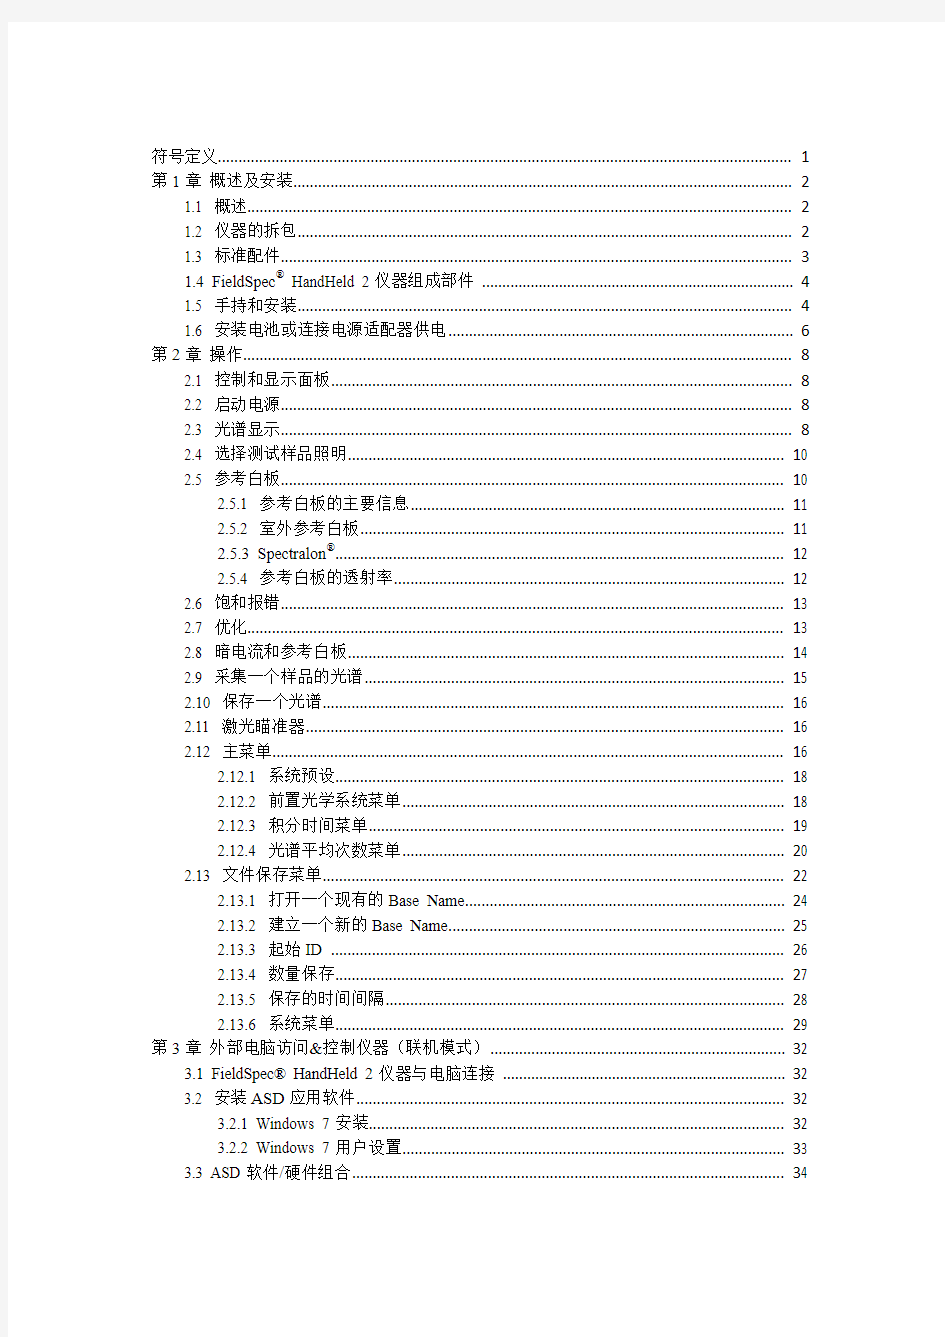 手持光谱仪中文使用手册